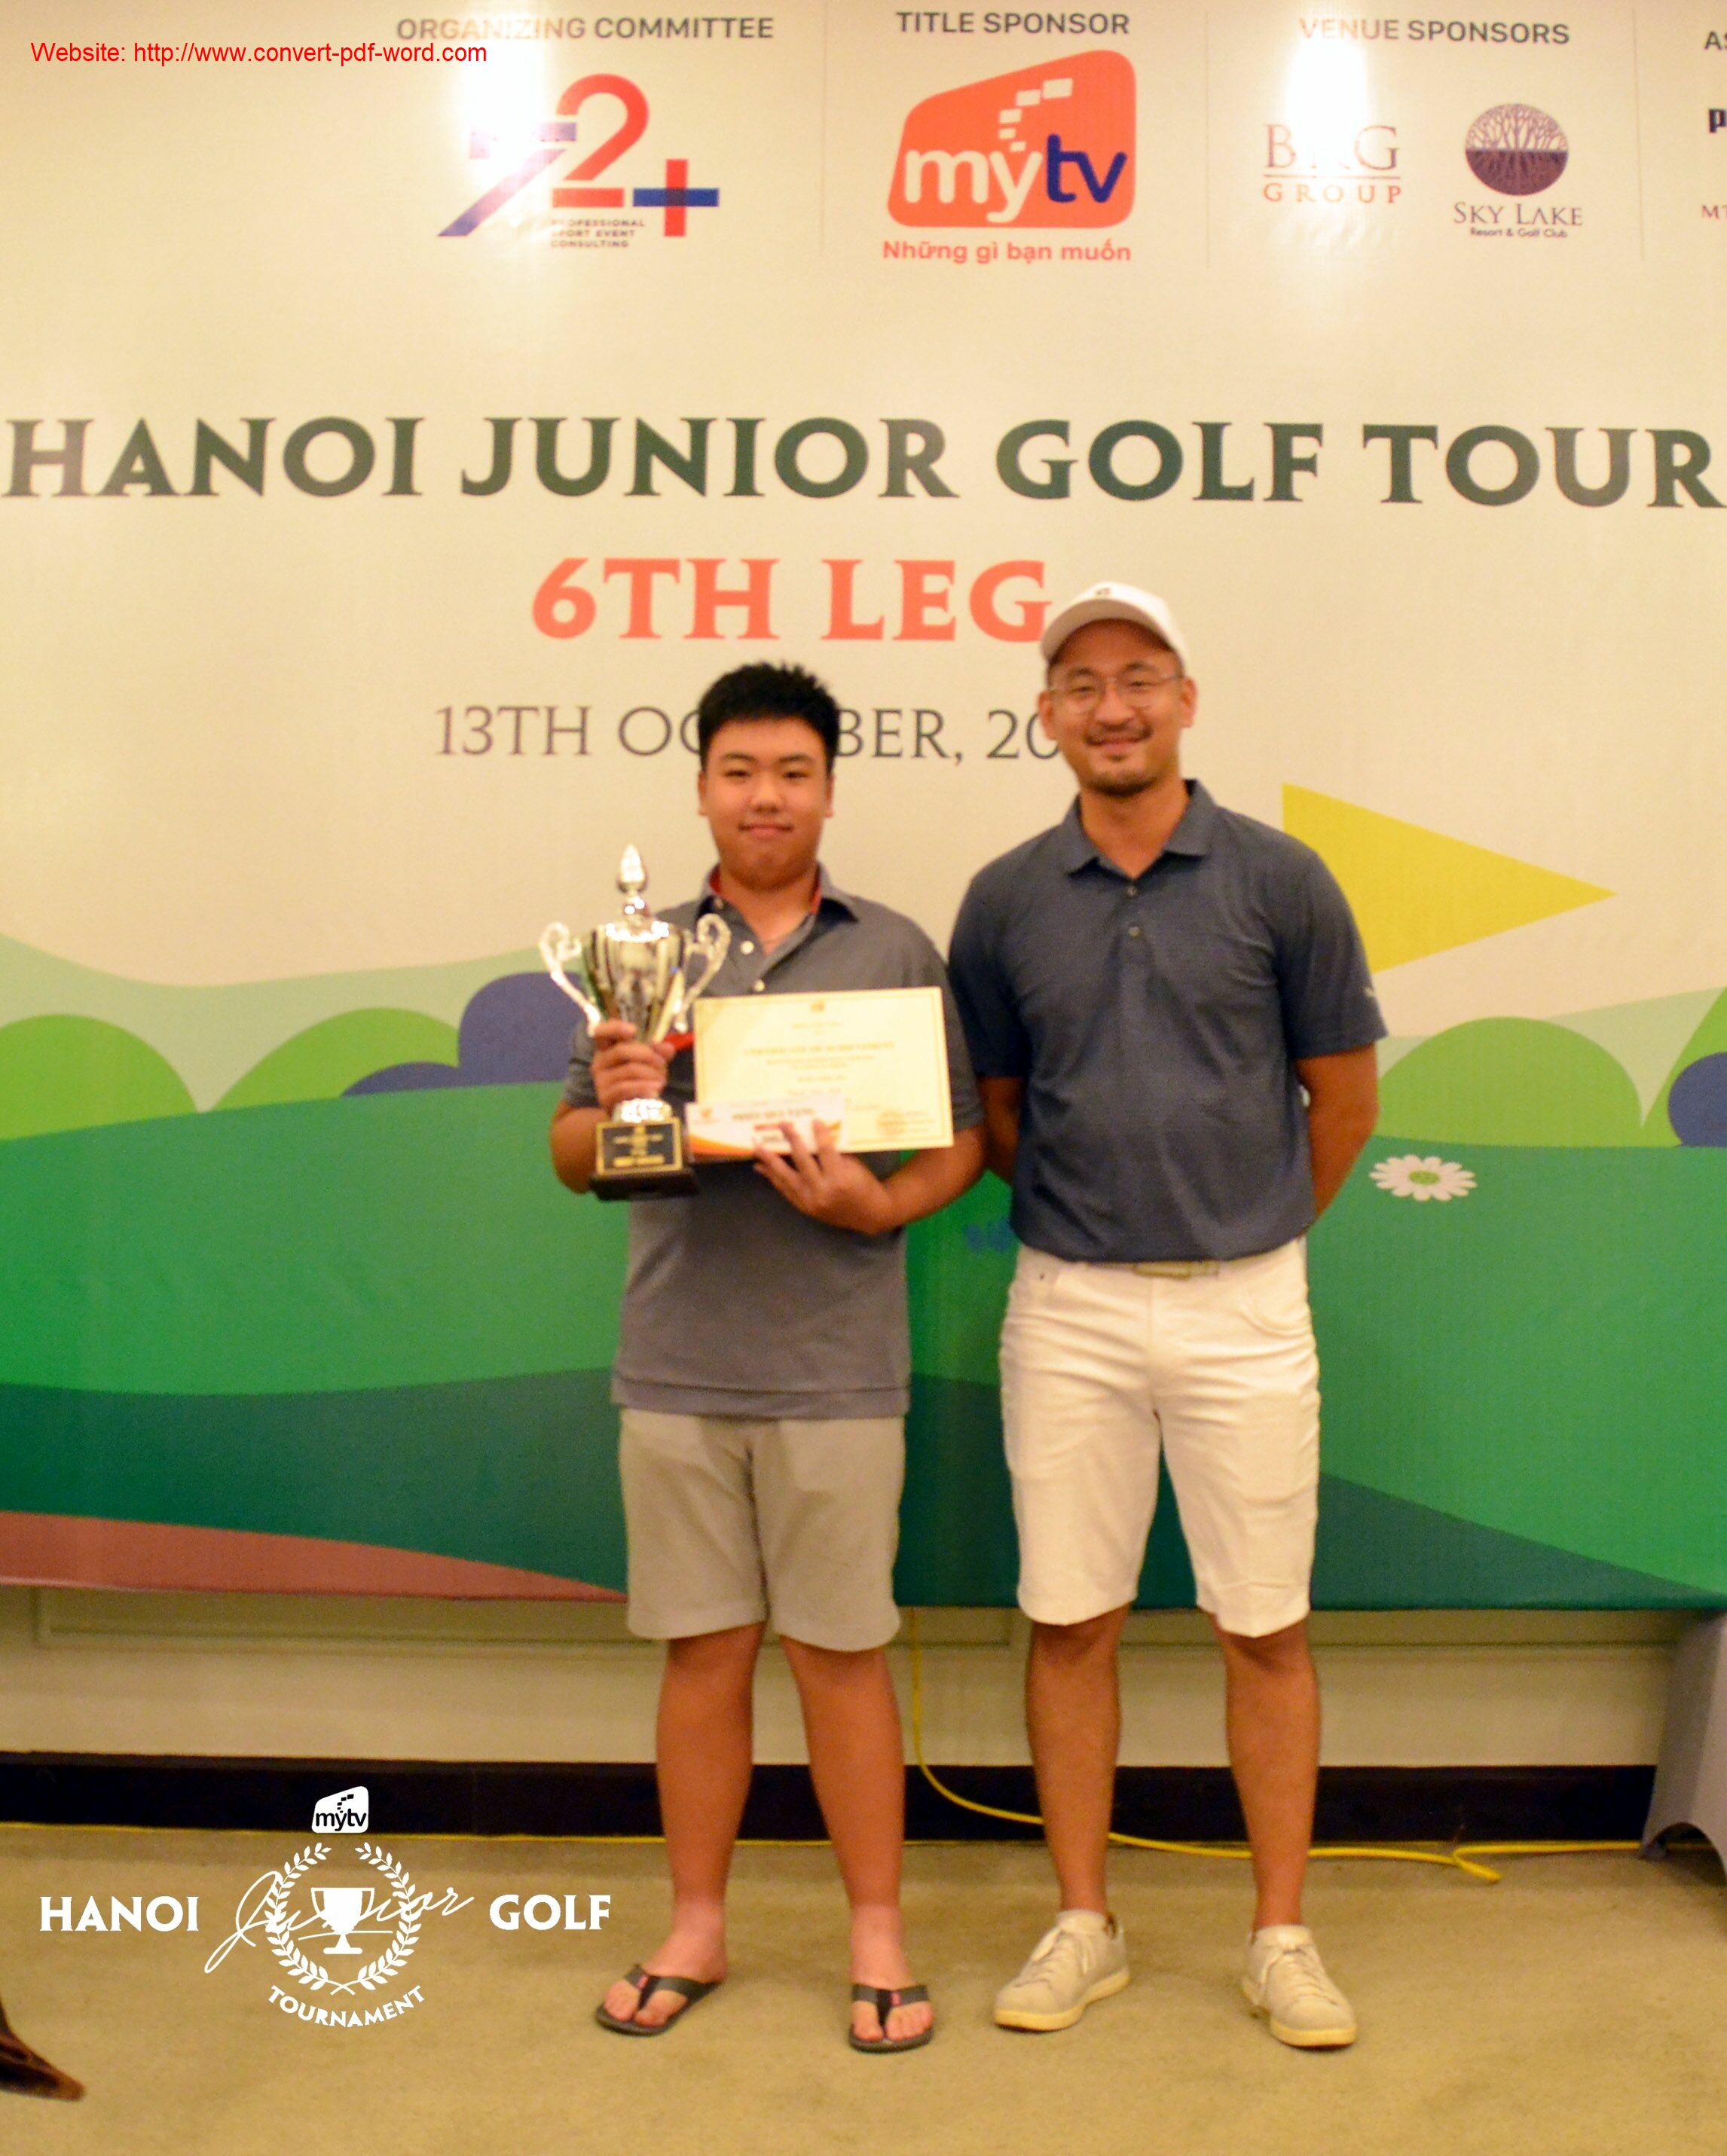 MyTV Hanoi Junior Golf Tour 2019: Golfer Nguyễn Đặng Minh lần thứ 2 vô địch